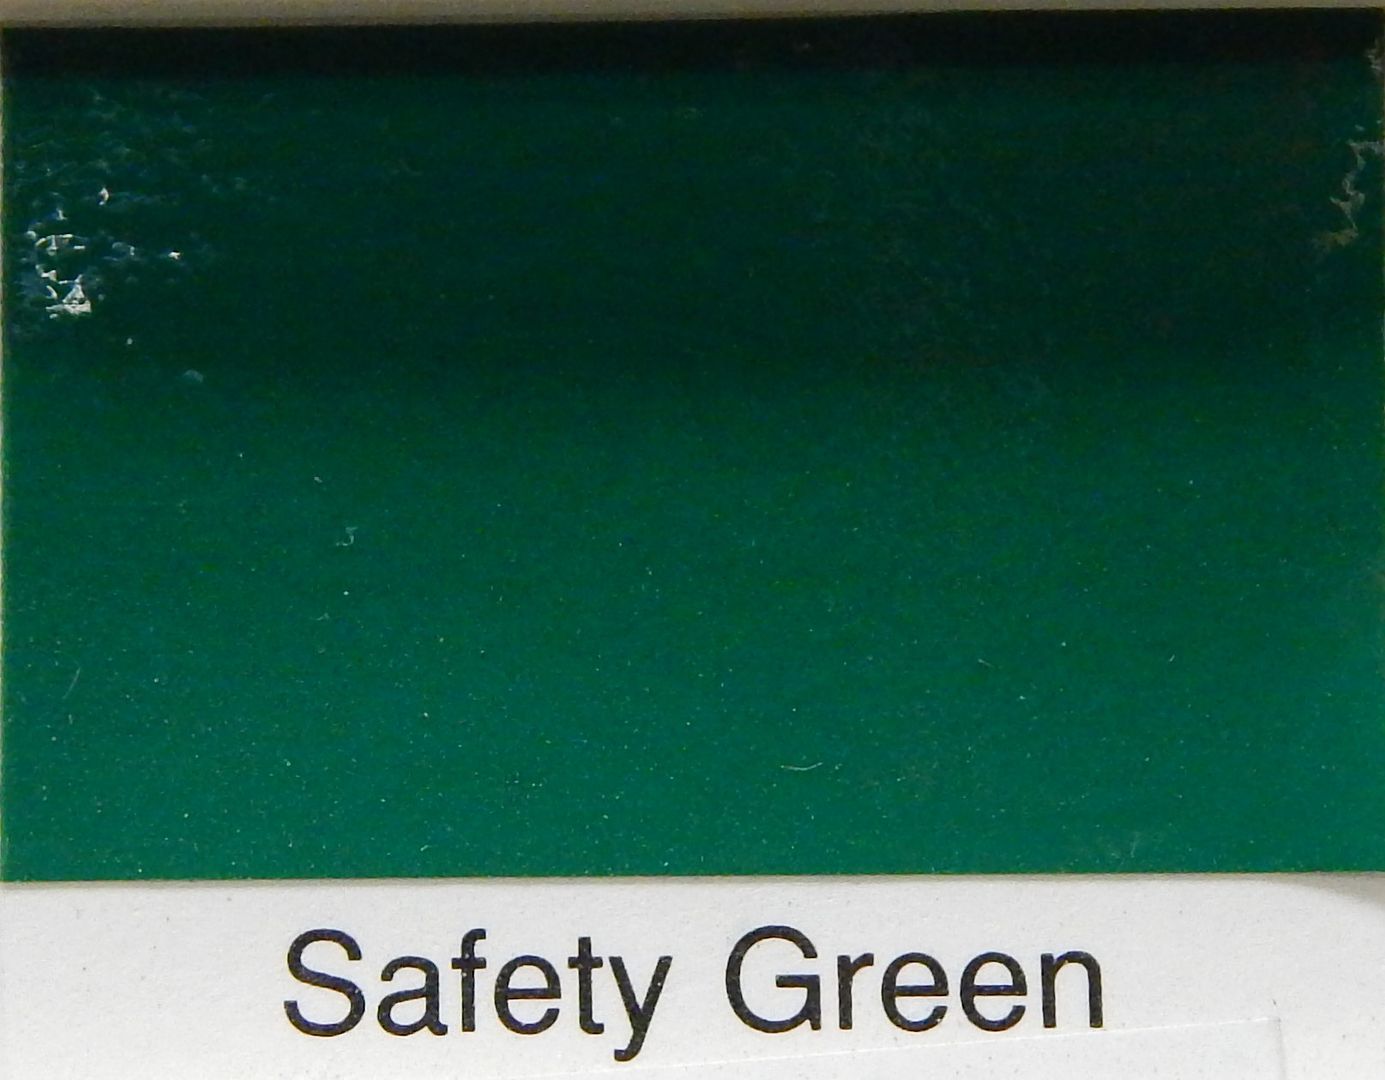 800 CHROMASET SAFETY GREEN OIL BASED INDUSTRIAL ENAMEL PAINT